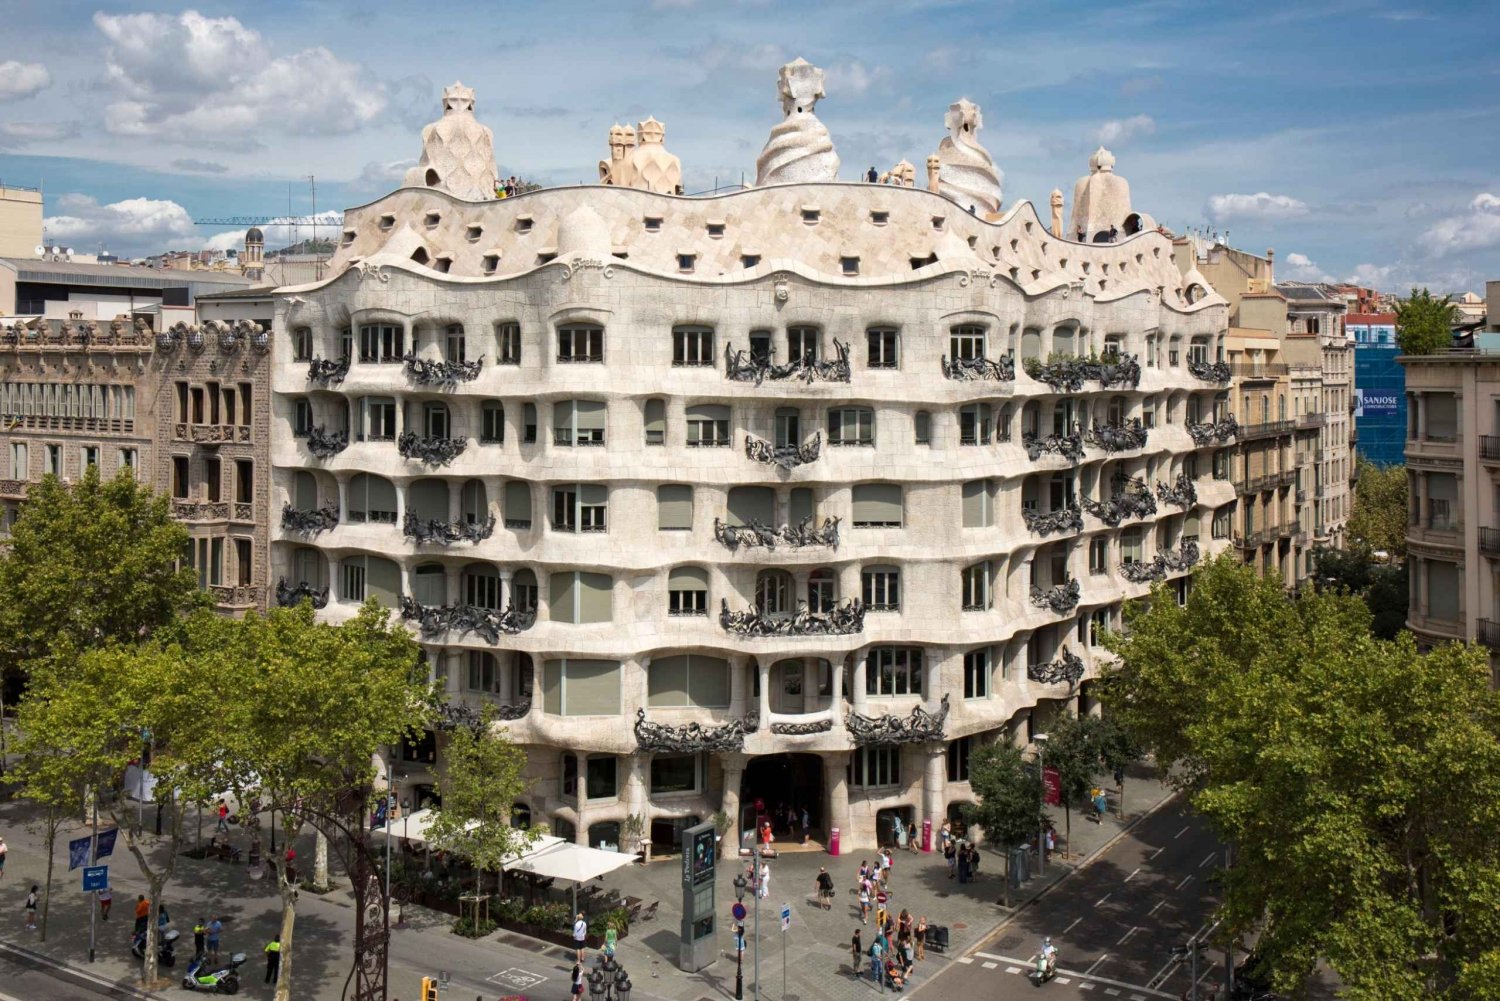 Barcelona: La Pedrera-Casa Milà Ticket & Audioguide Option